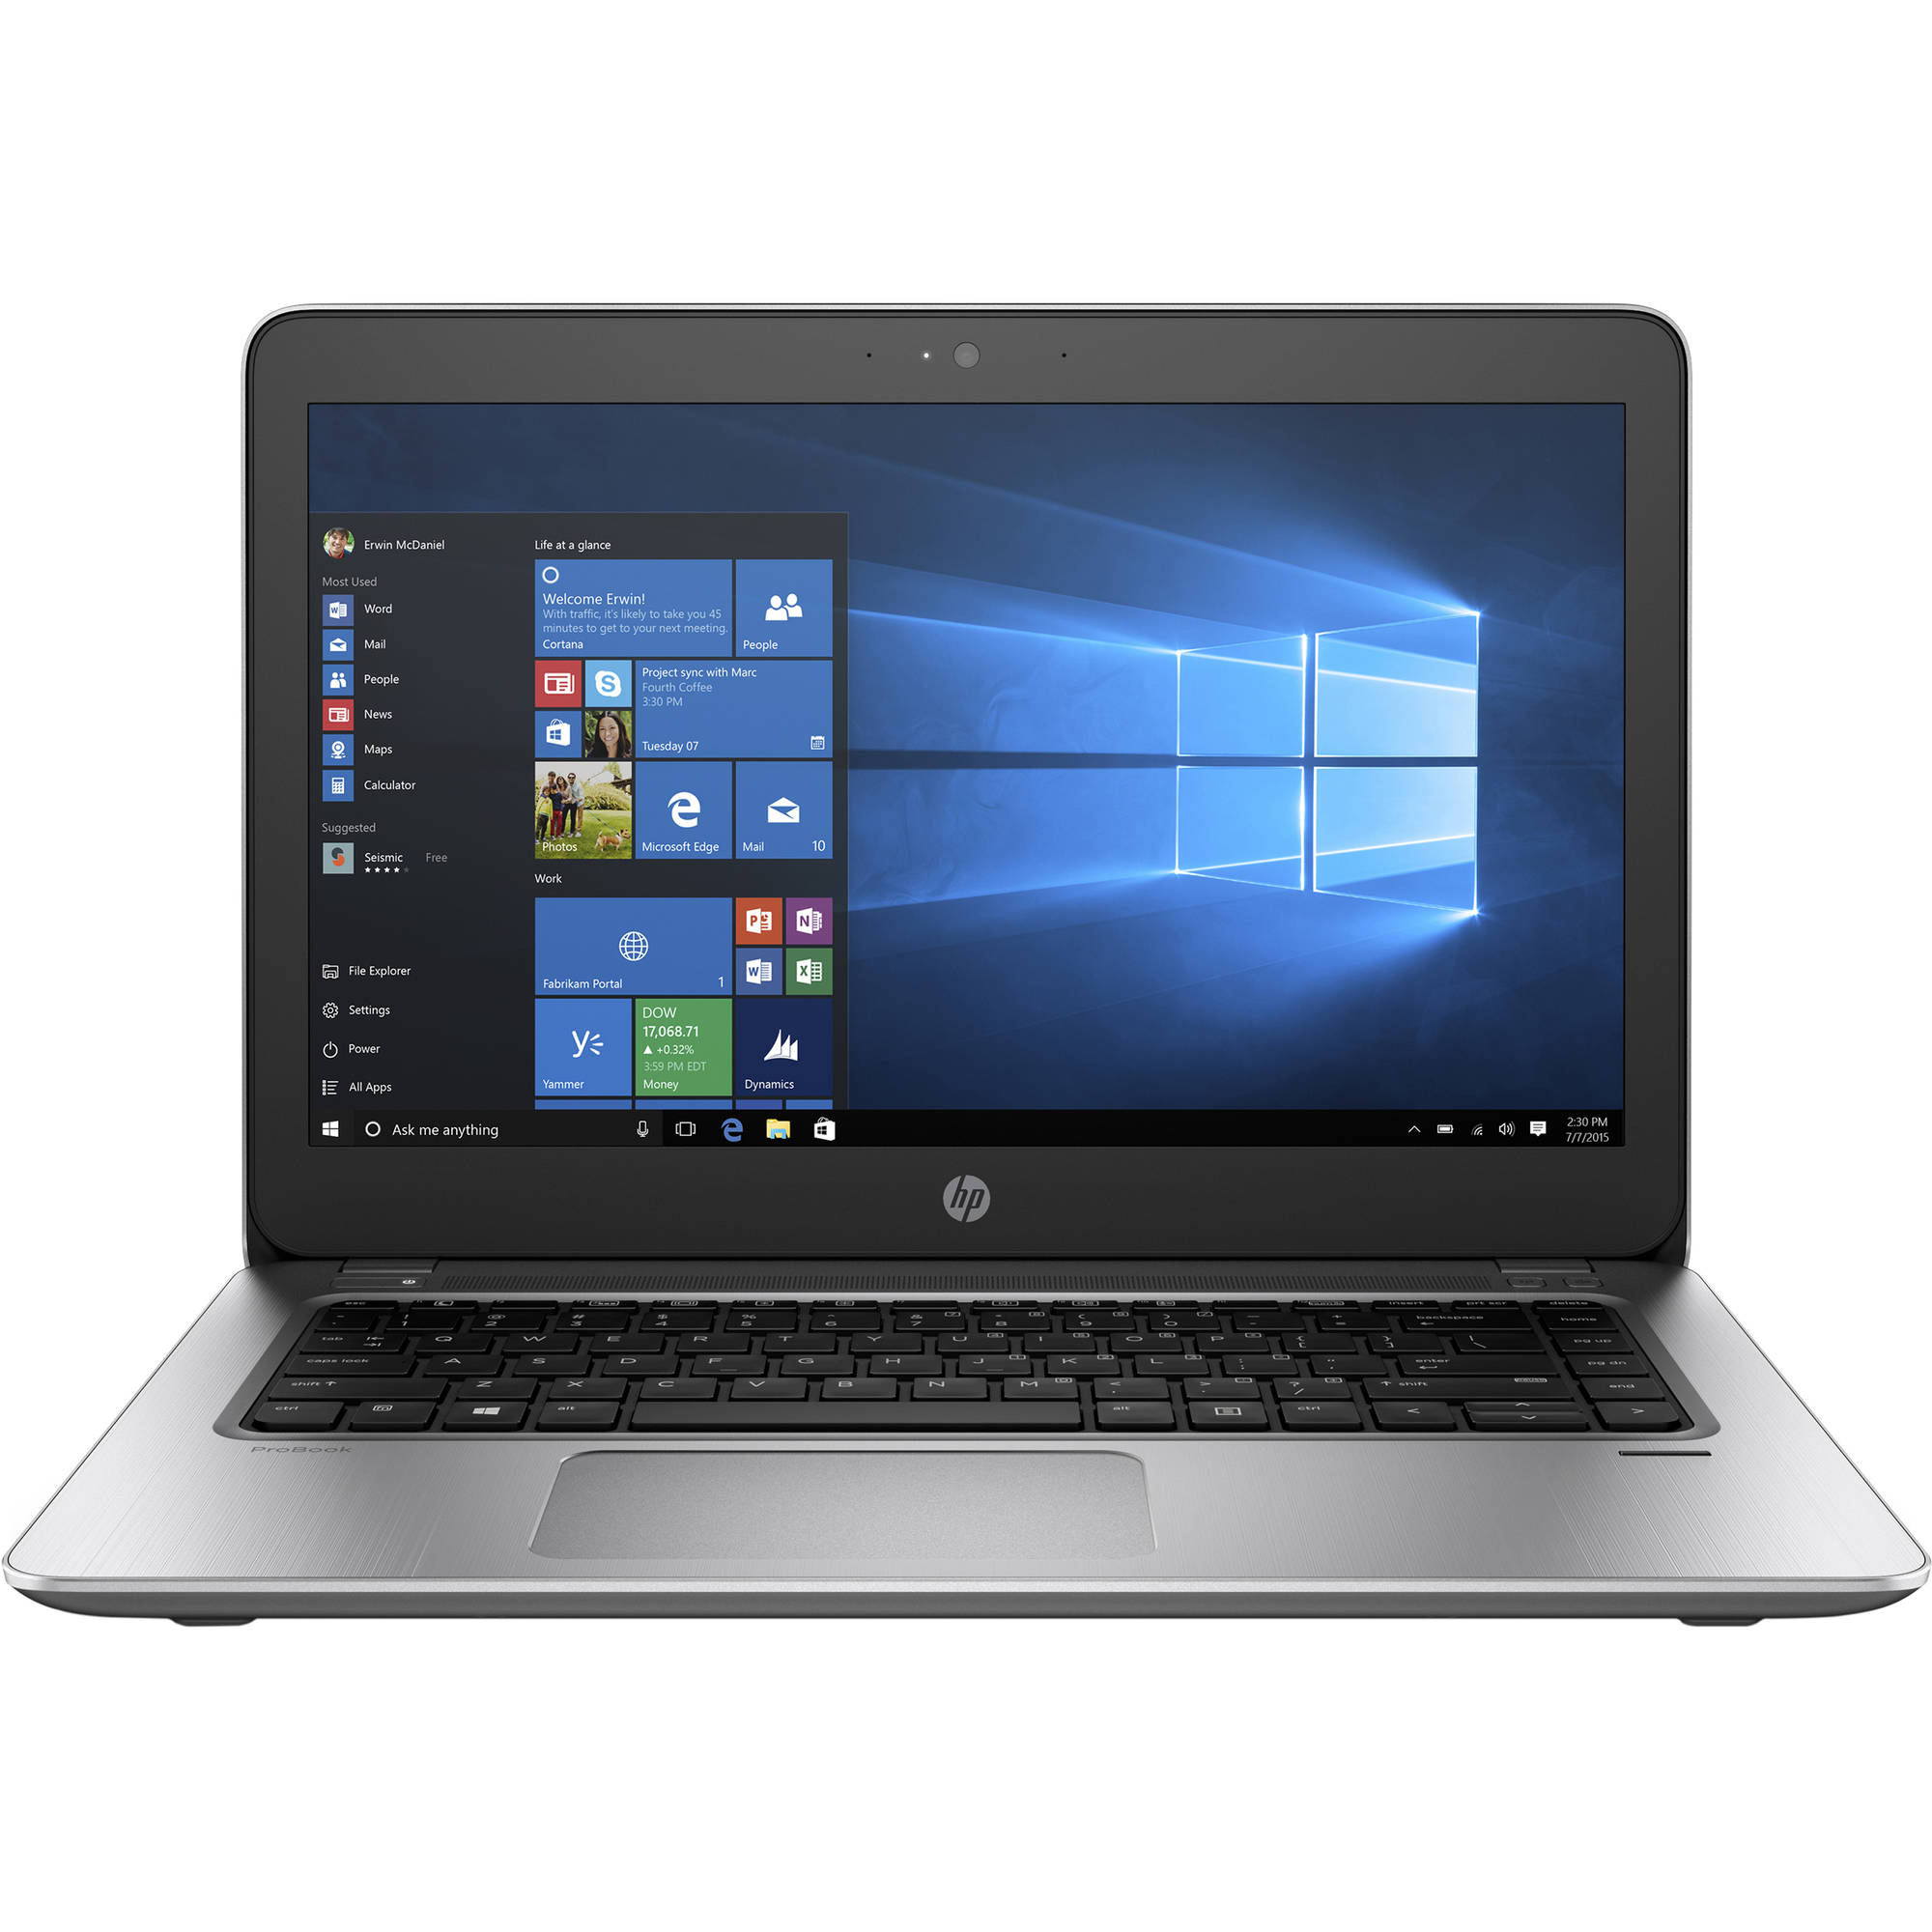 Laptop HP Probook 440 G4, Intel Core i7-7500U, 8GB DDR4, SSD 256GB, Intel HD Graphics, Windows 10 Pro